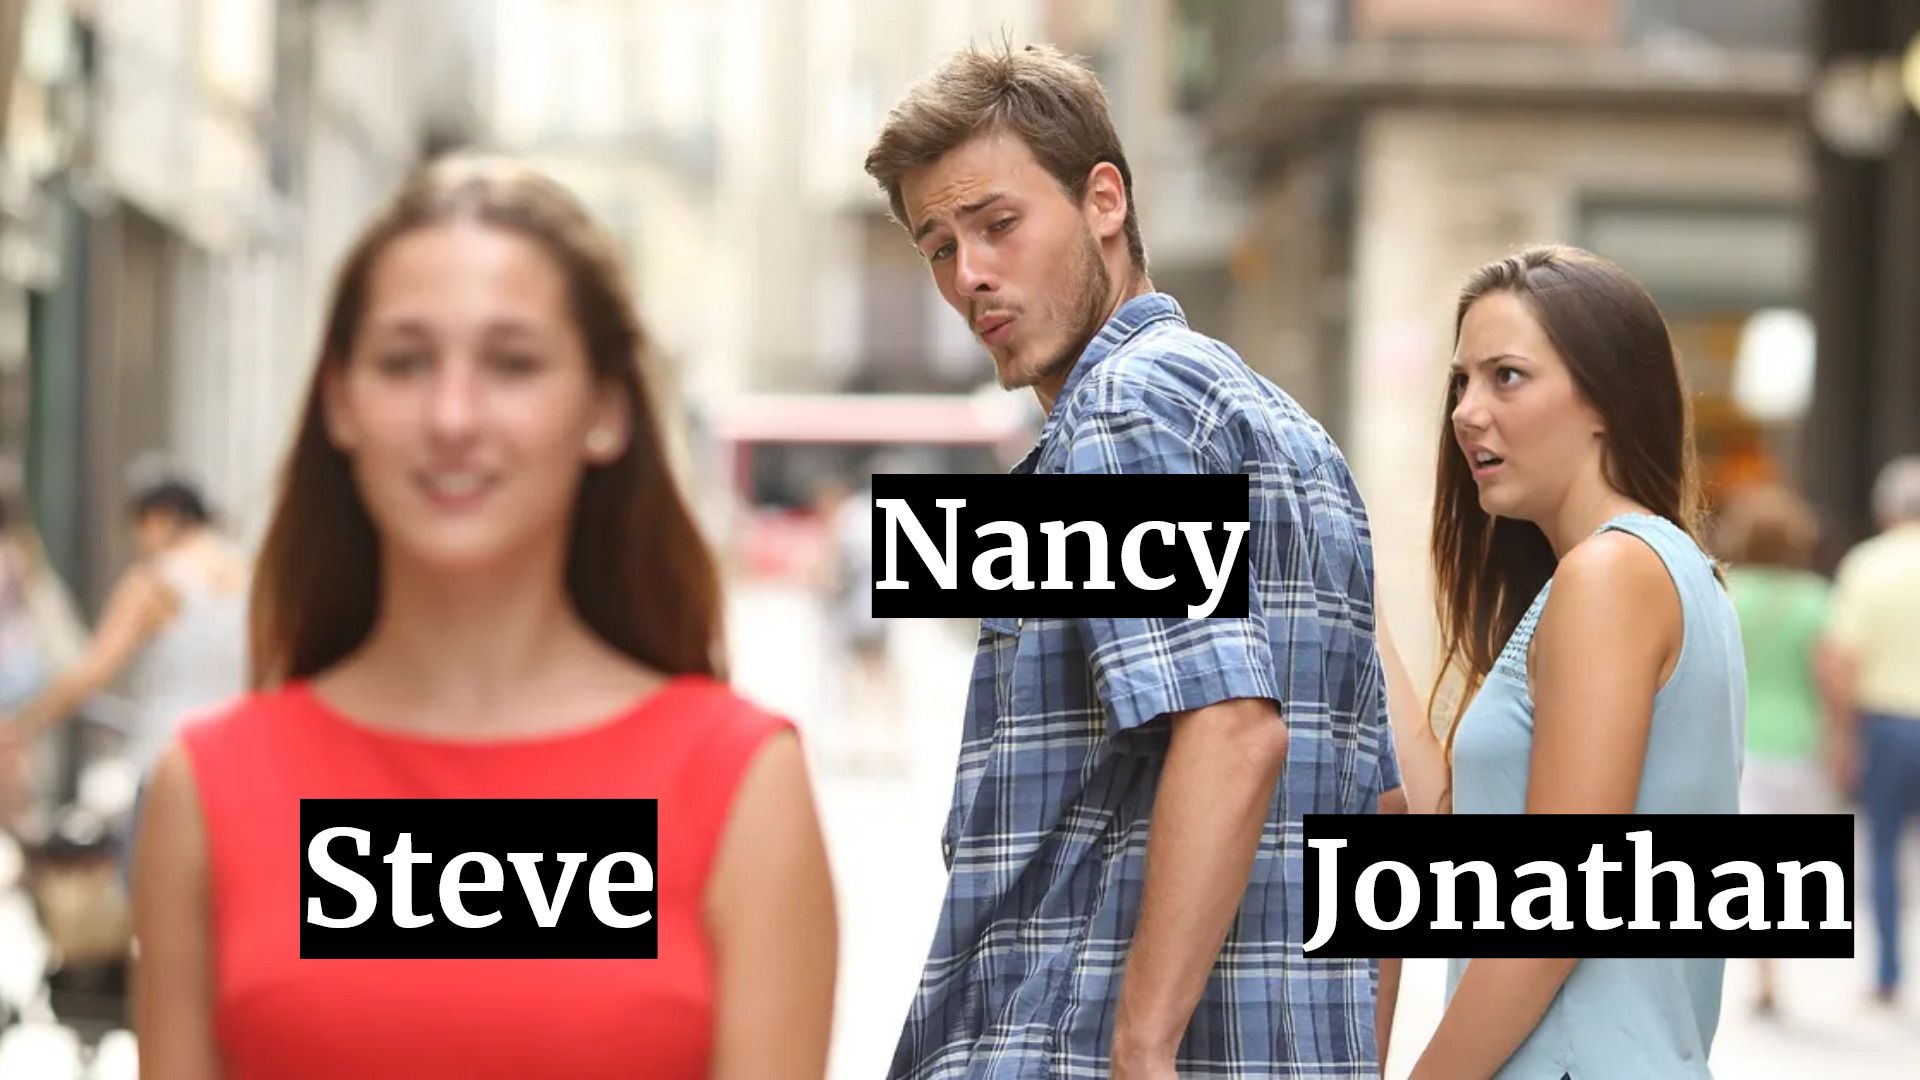 Stranger Things meme with Nancy Steve and Jonathan